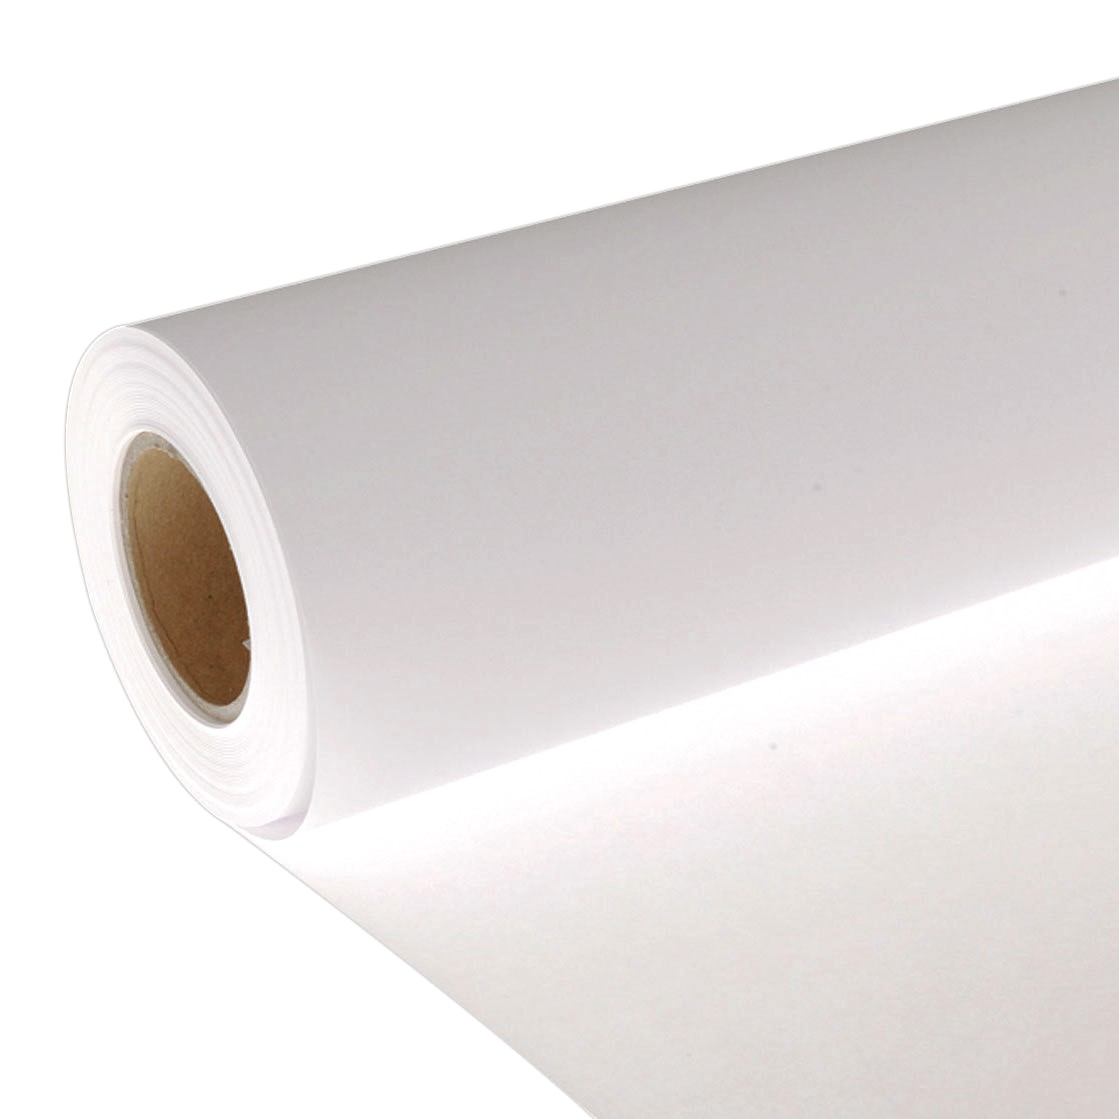 Rouleau de papier de soie – 36 po, blanc S-13174 - Uline